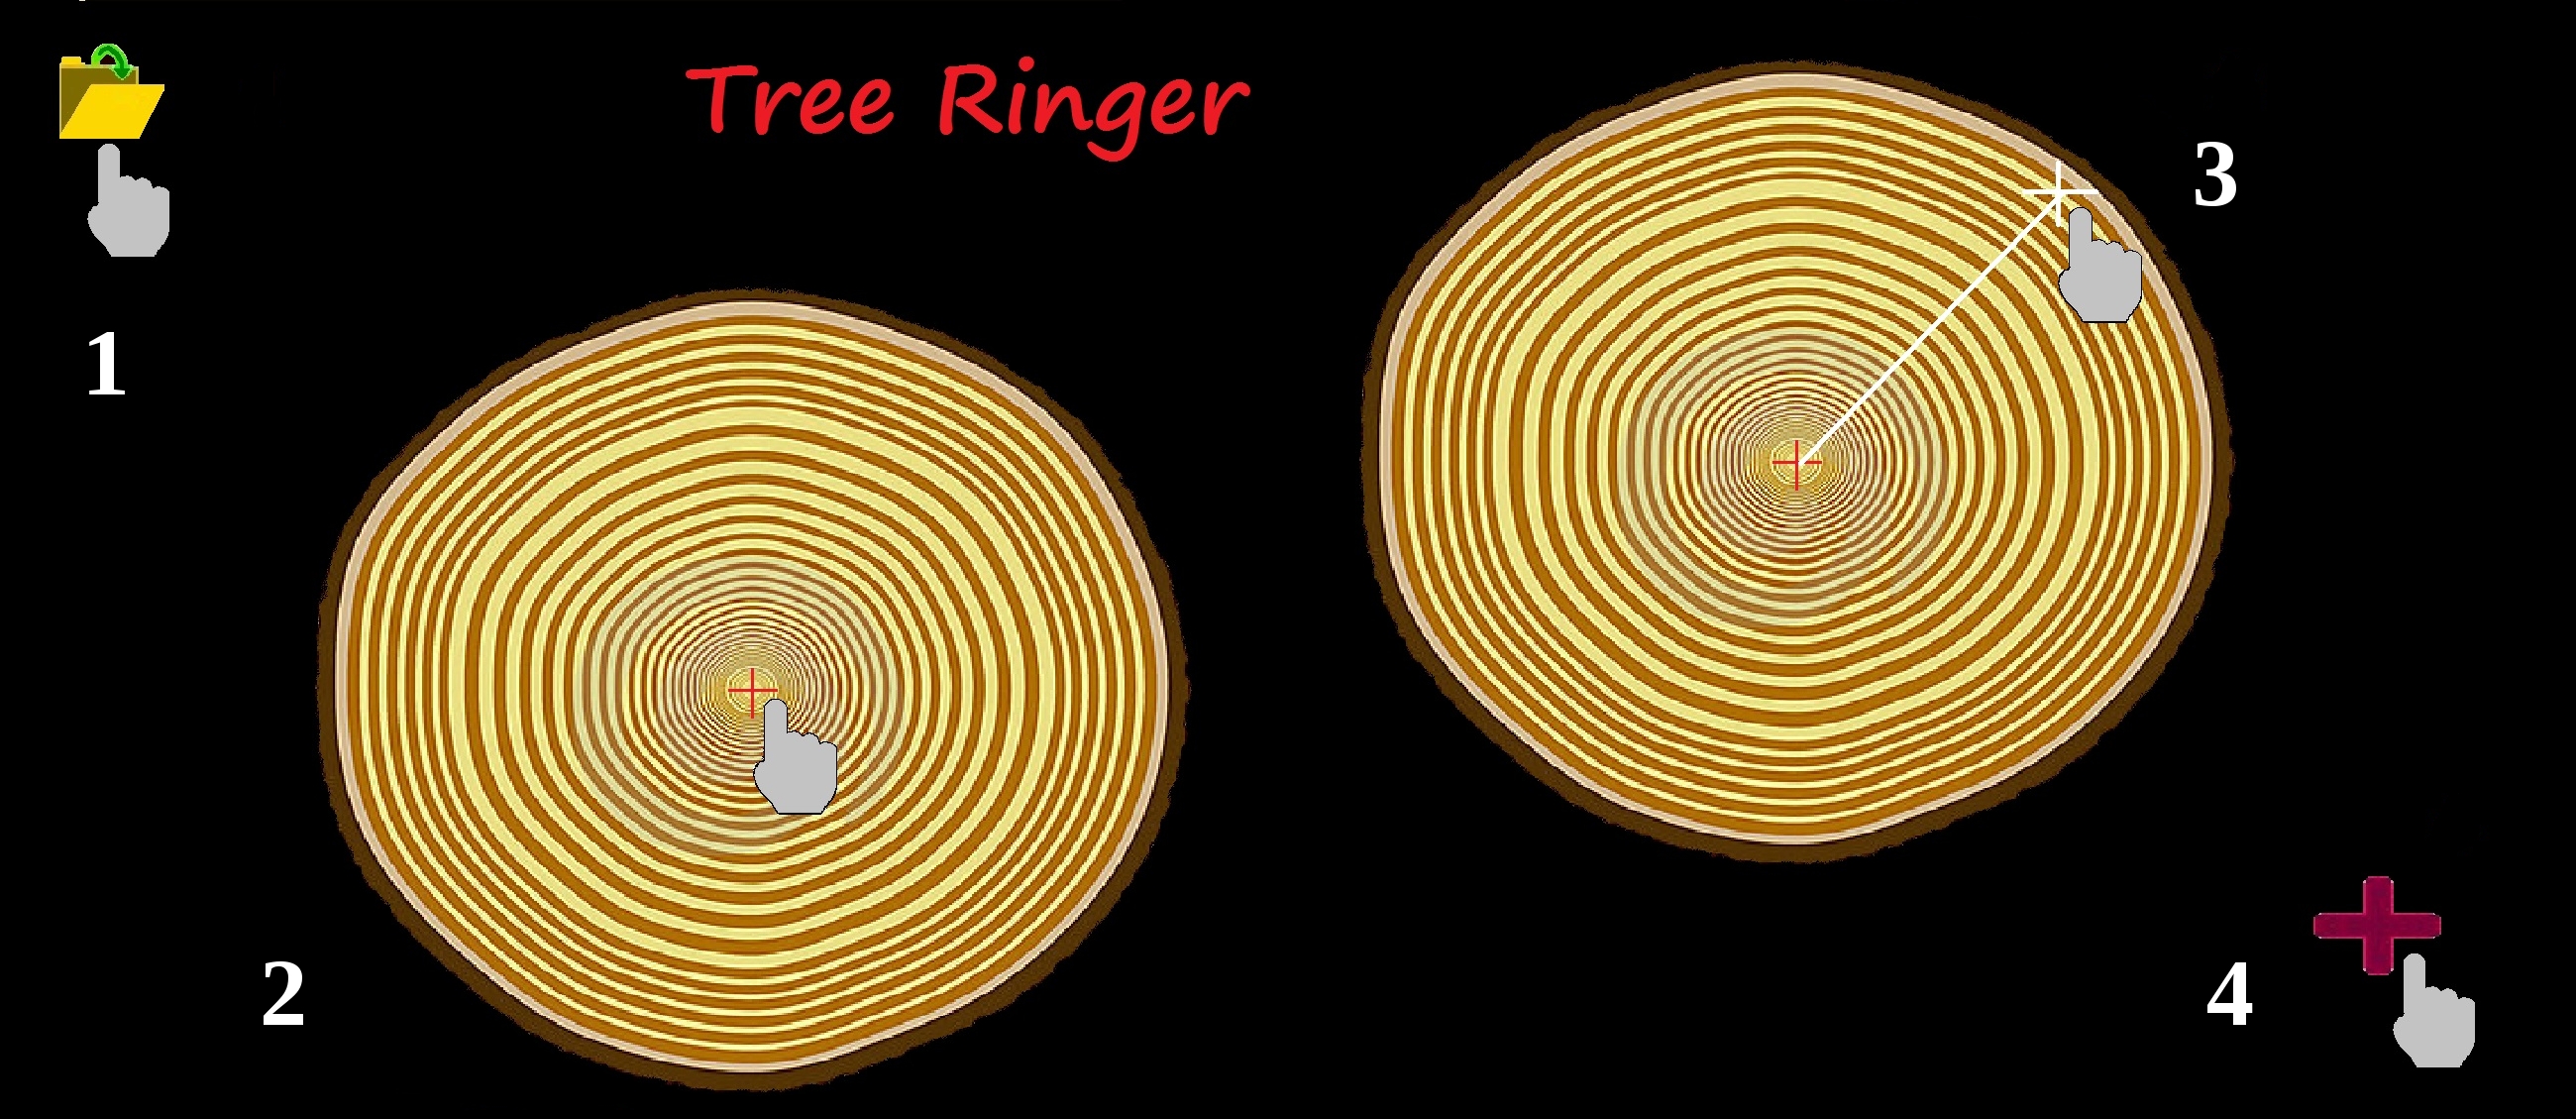 Tree Ringer